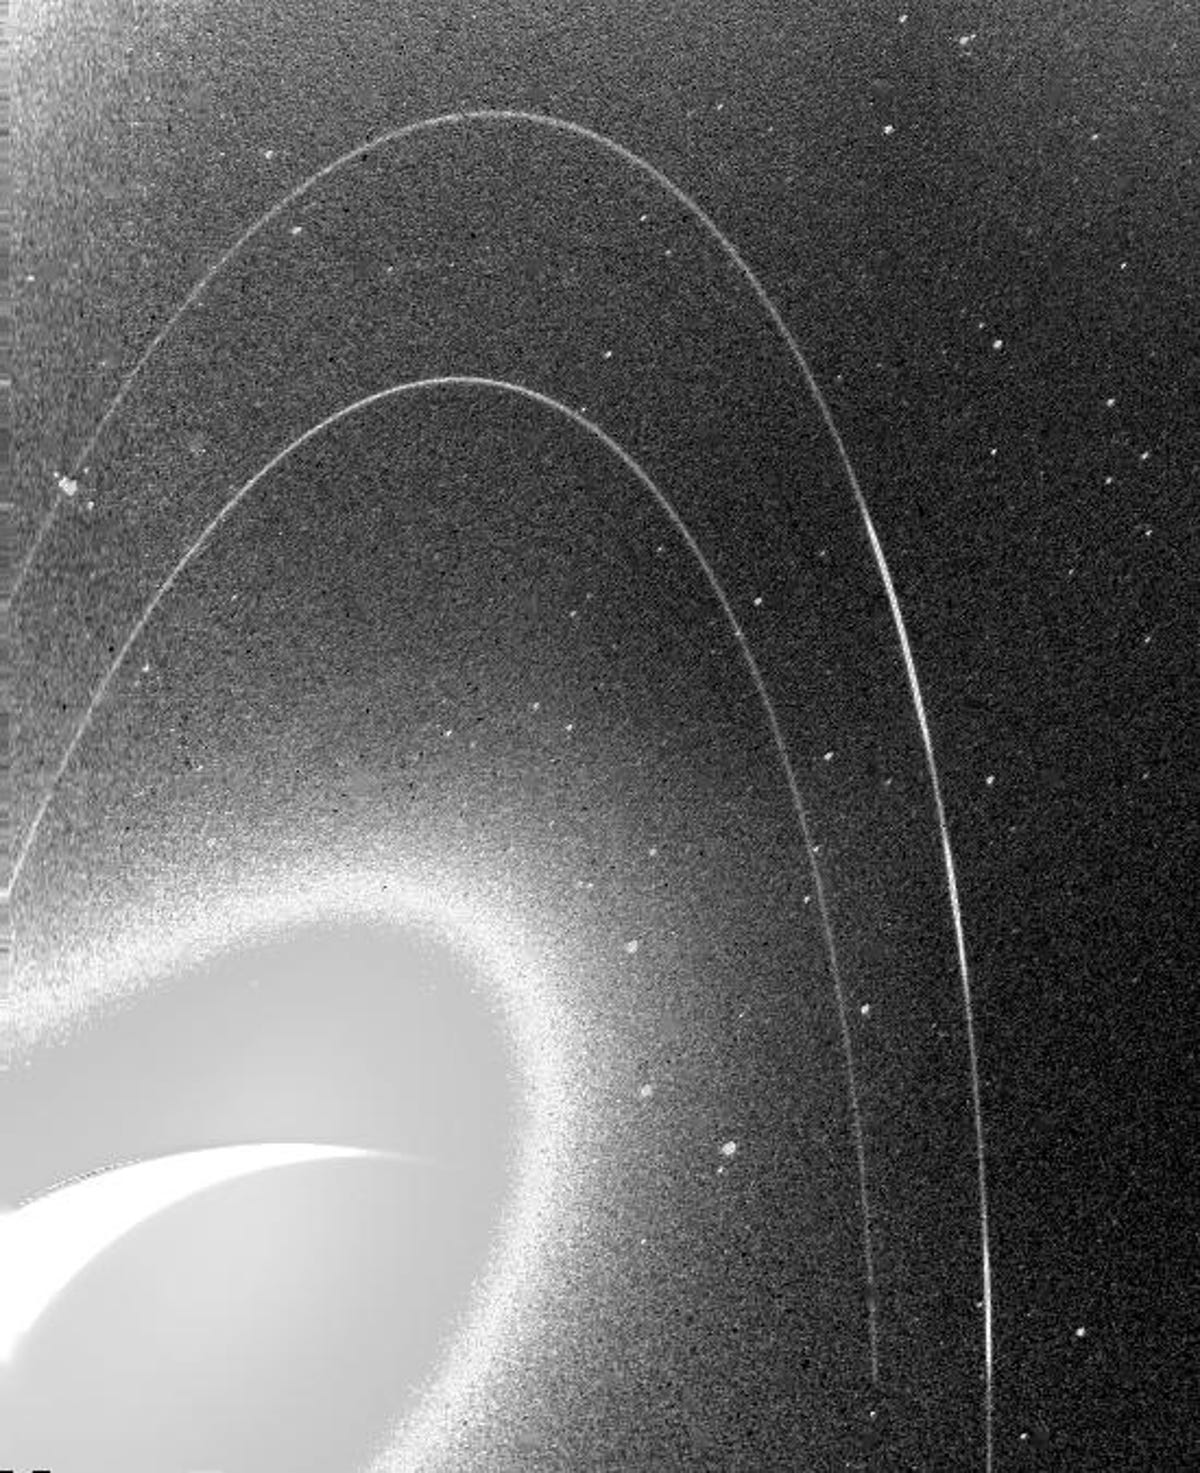 Imaginea granulată alb-negru arată inelele slabe ale lui Neptun.